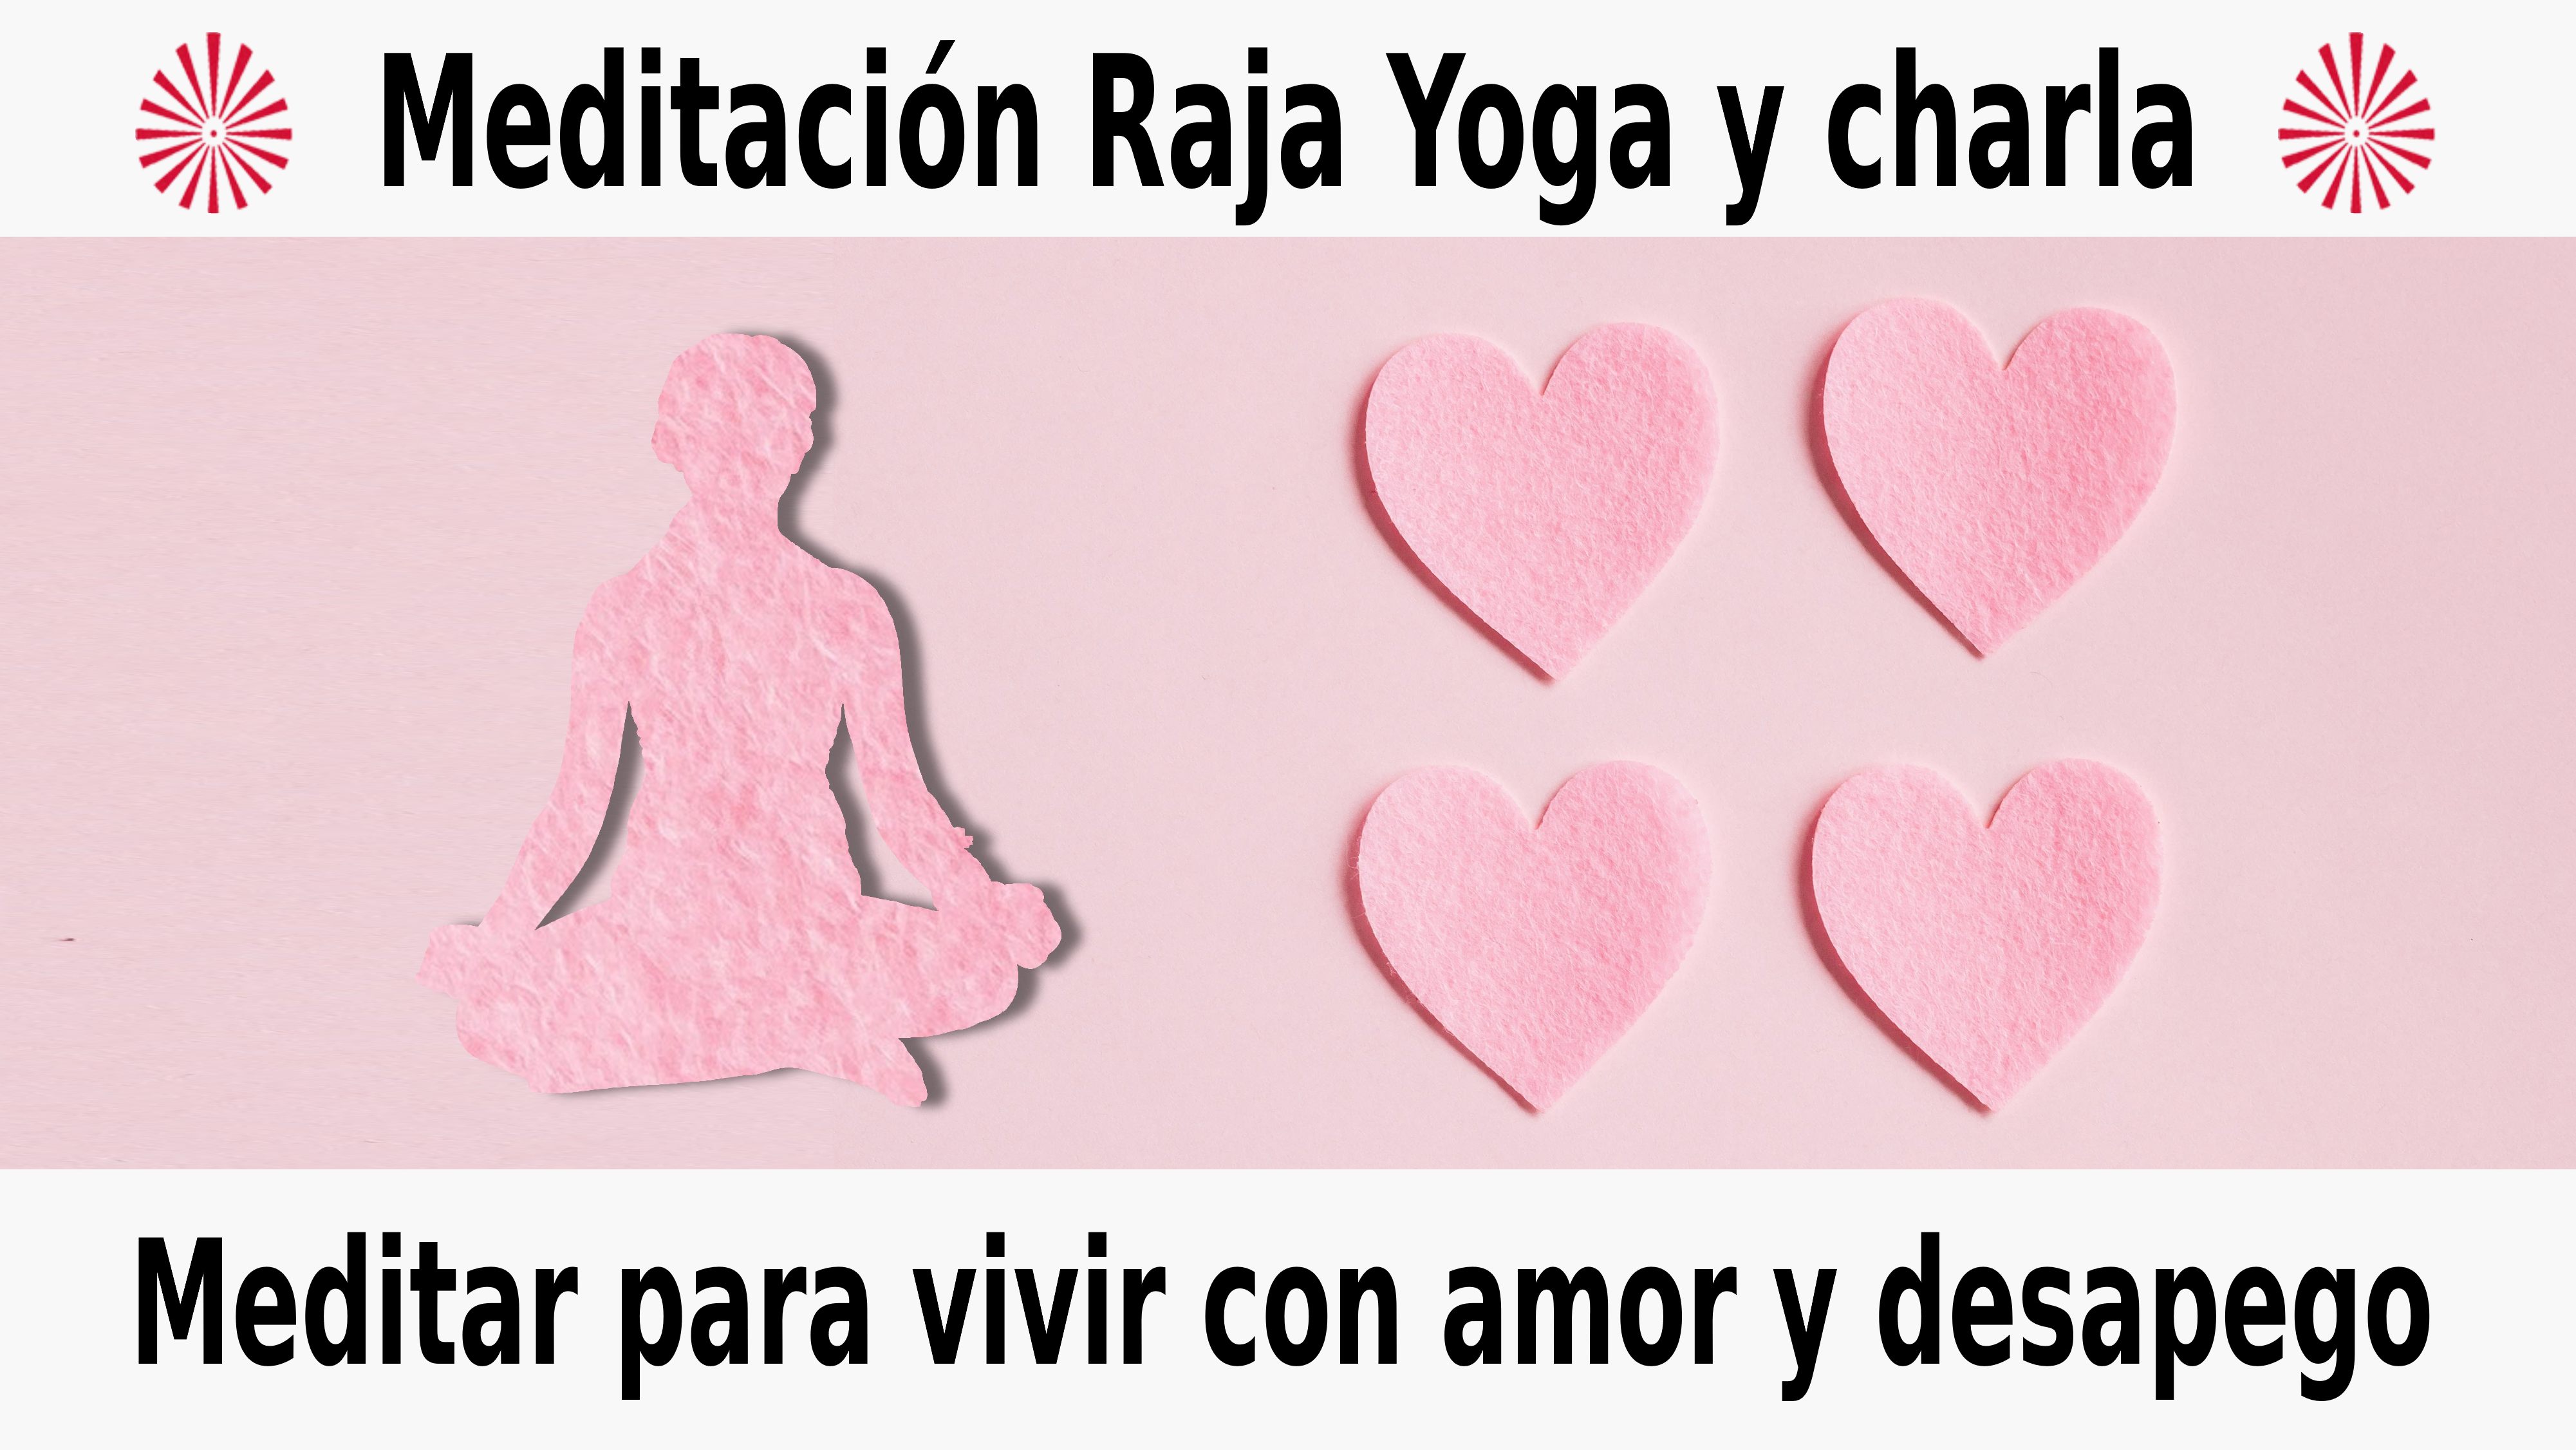 Meditación Raja Yoga y charla: Meditar para vivir con amor y desapego (2 Diciembre 2020) On-line desde Sevilla